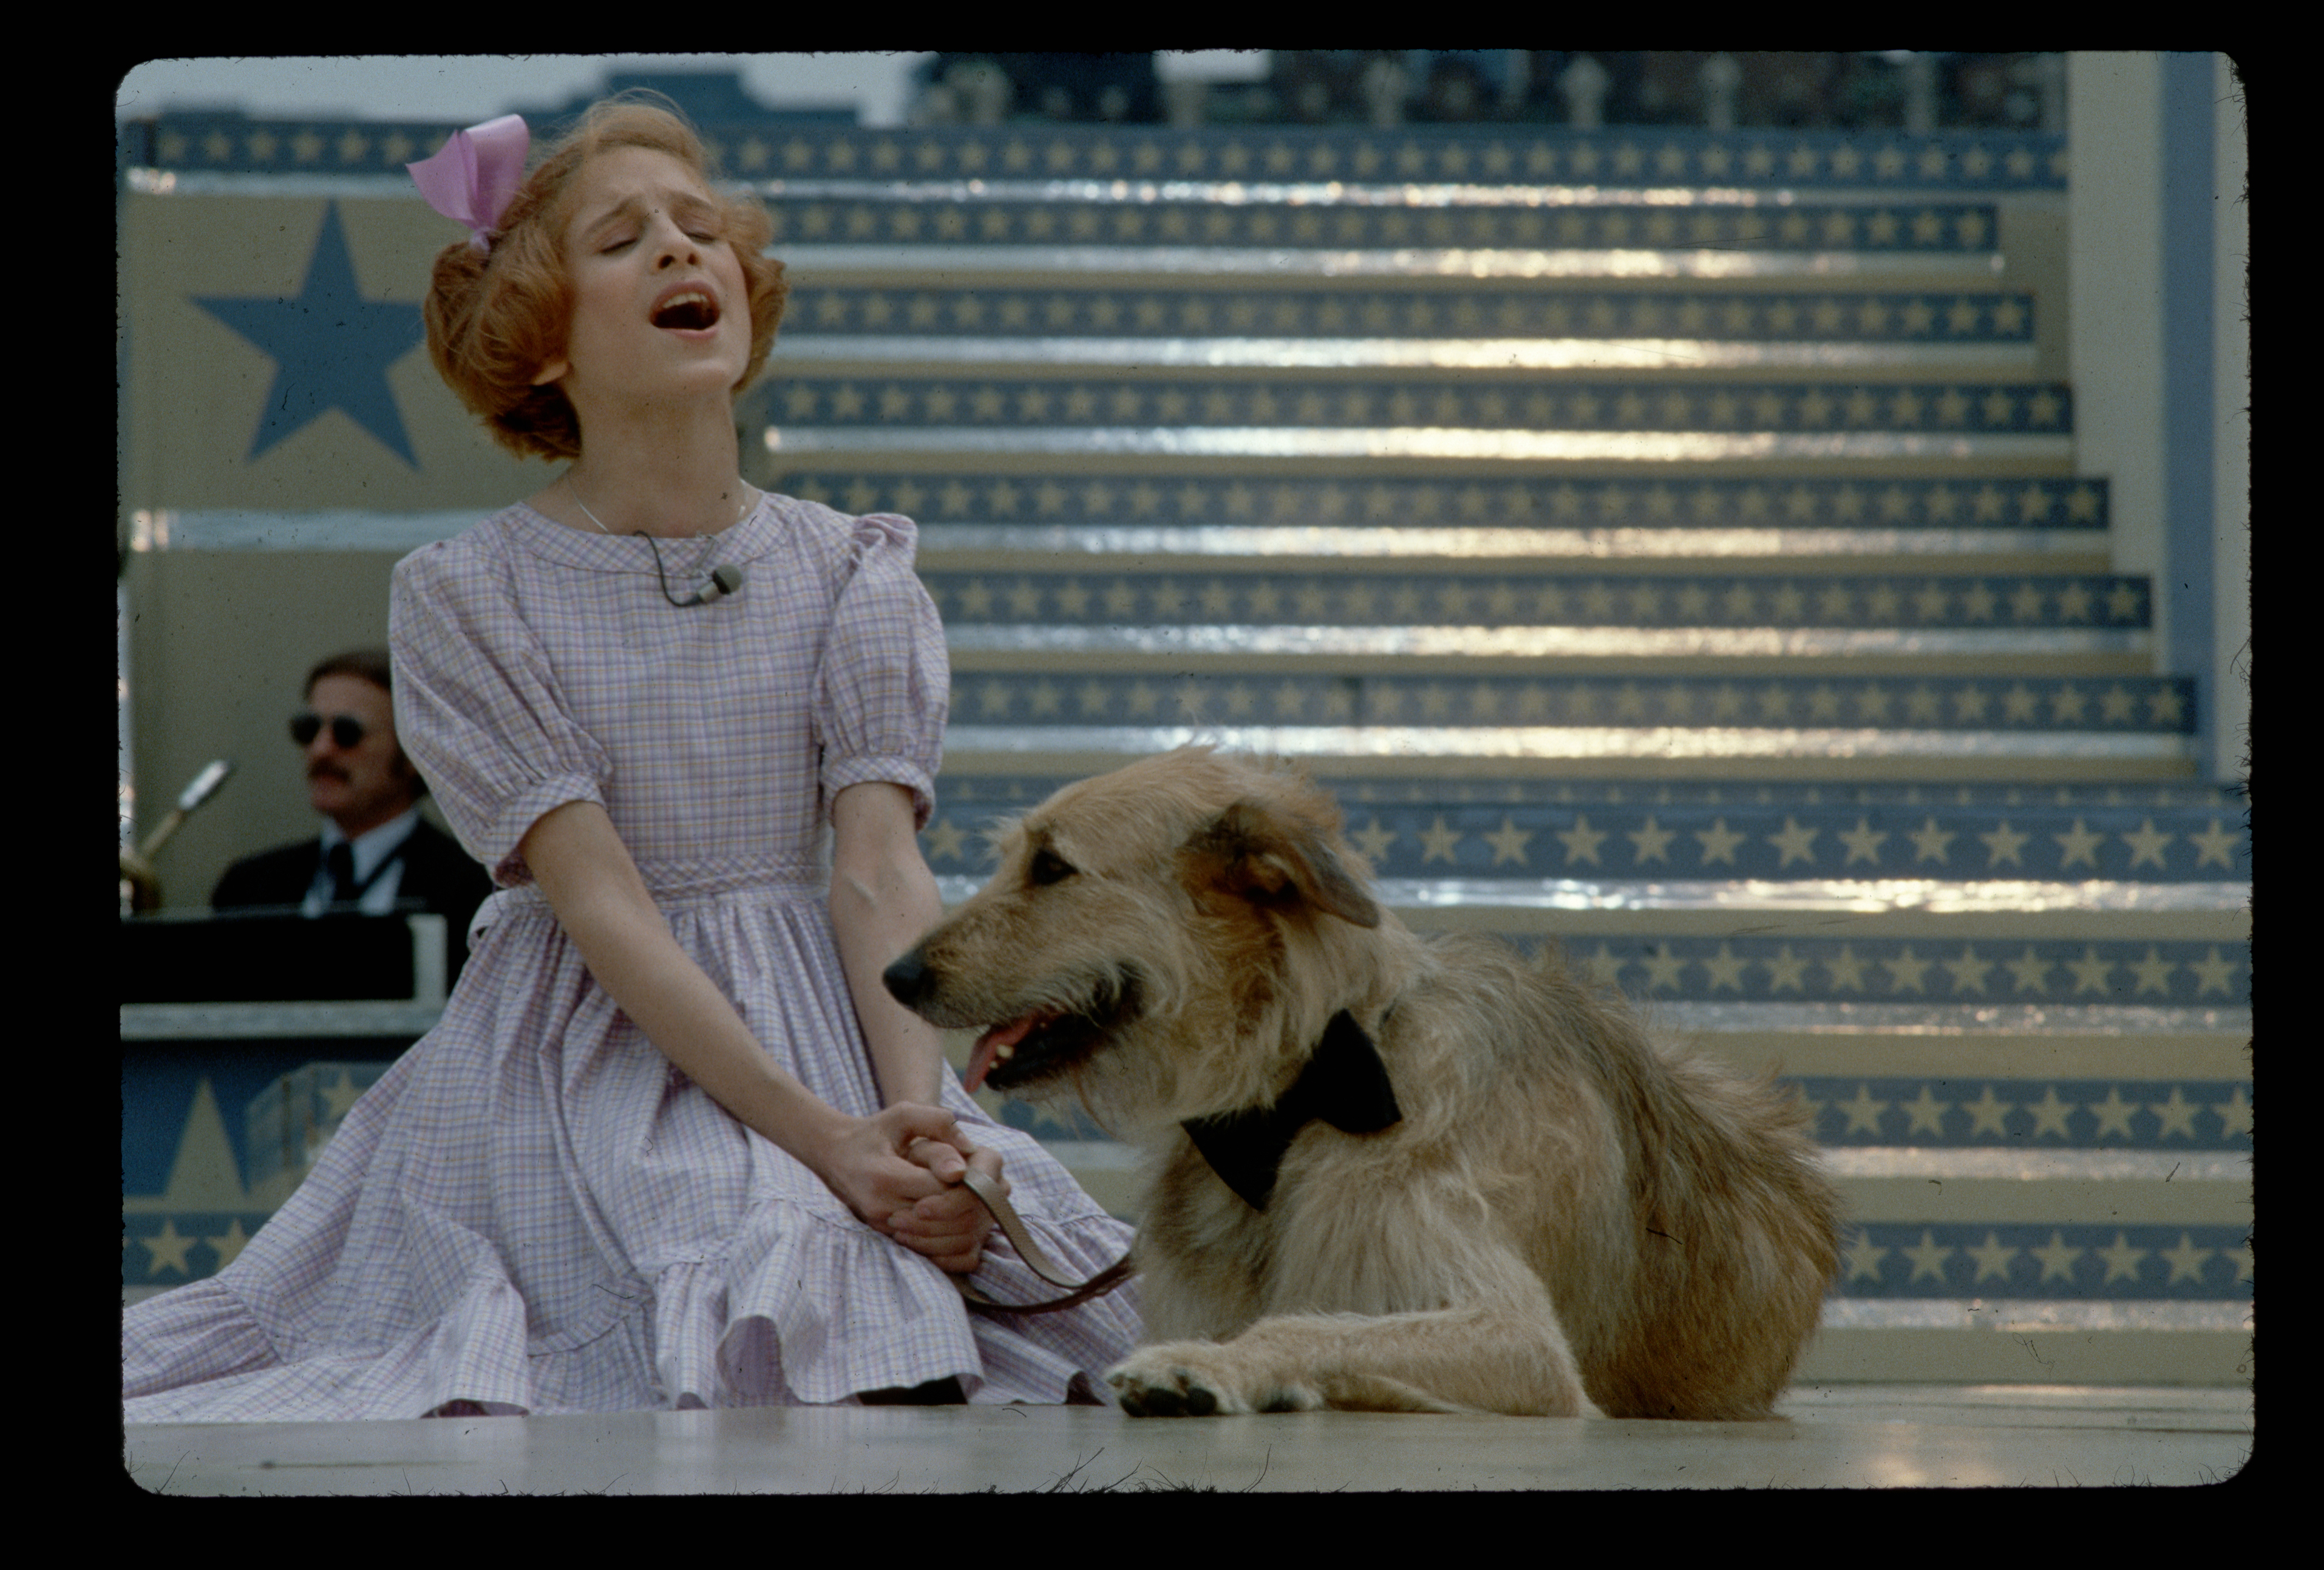 Die Schauspielerin Sarah Jessica Parker spielt eine Szene mit einem Hund im Musical "Annie" am 1. Januar 1979 | Quelle: Getty Images